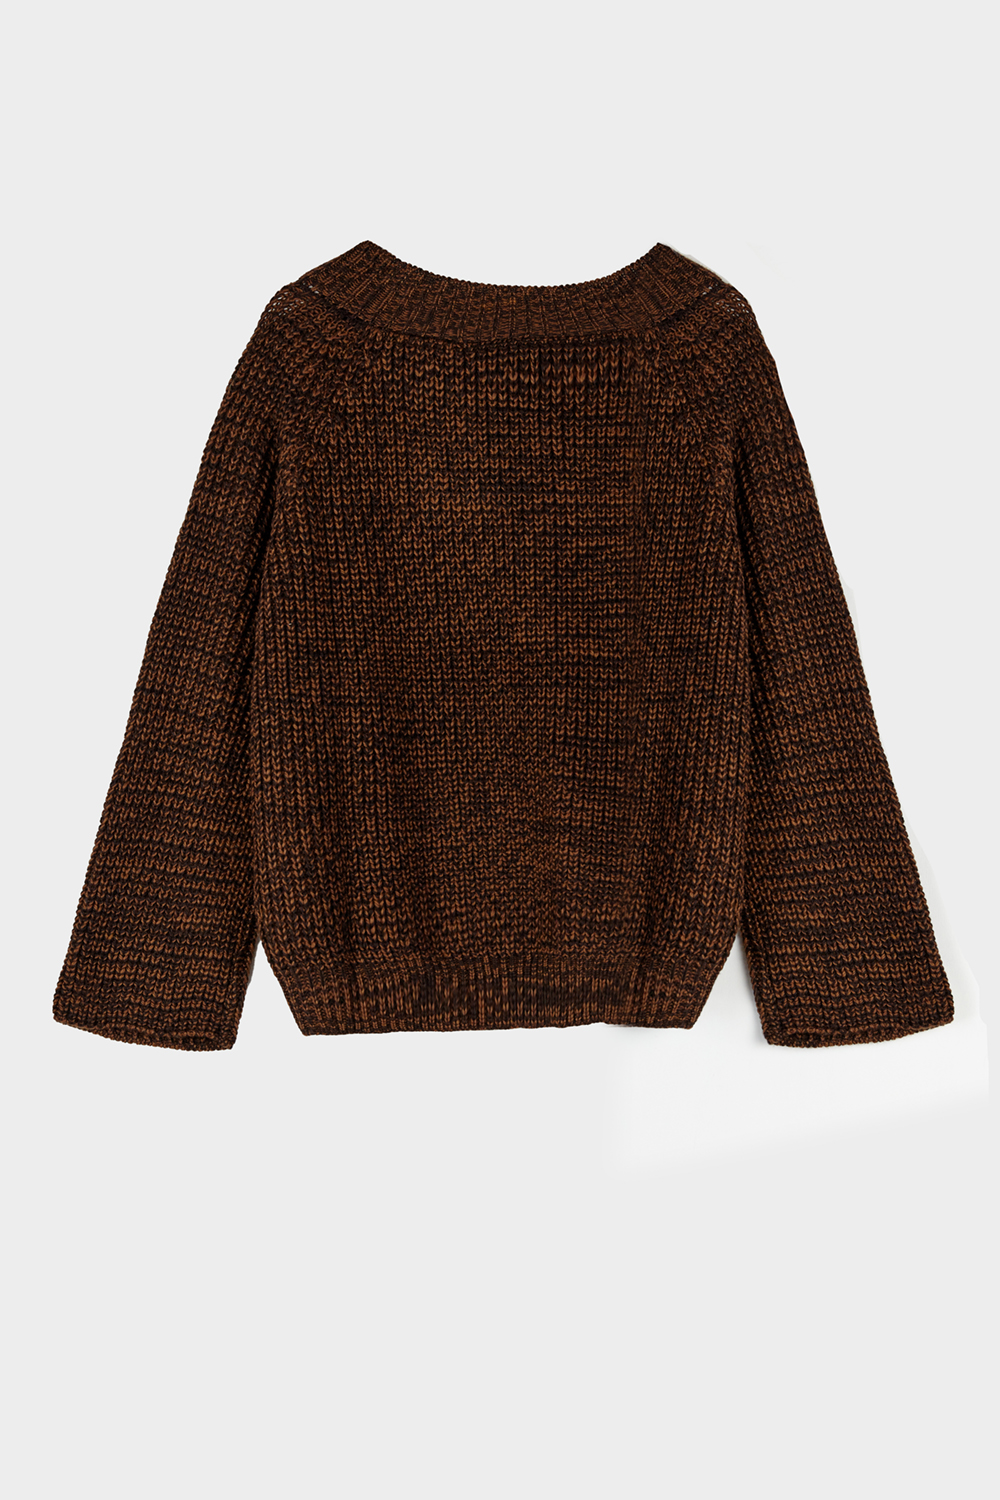 sweater peonia chocolate_negro 1.jpg_1000x1500_72